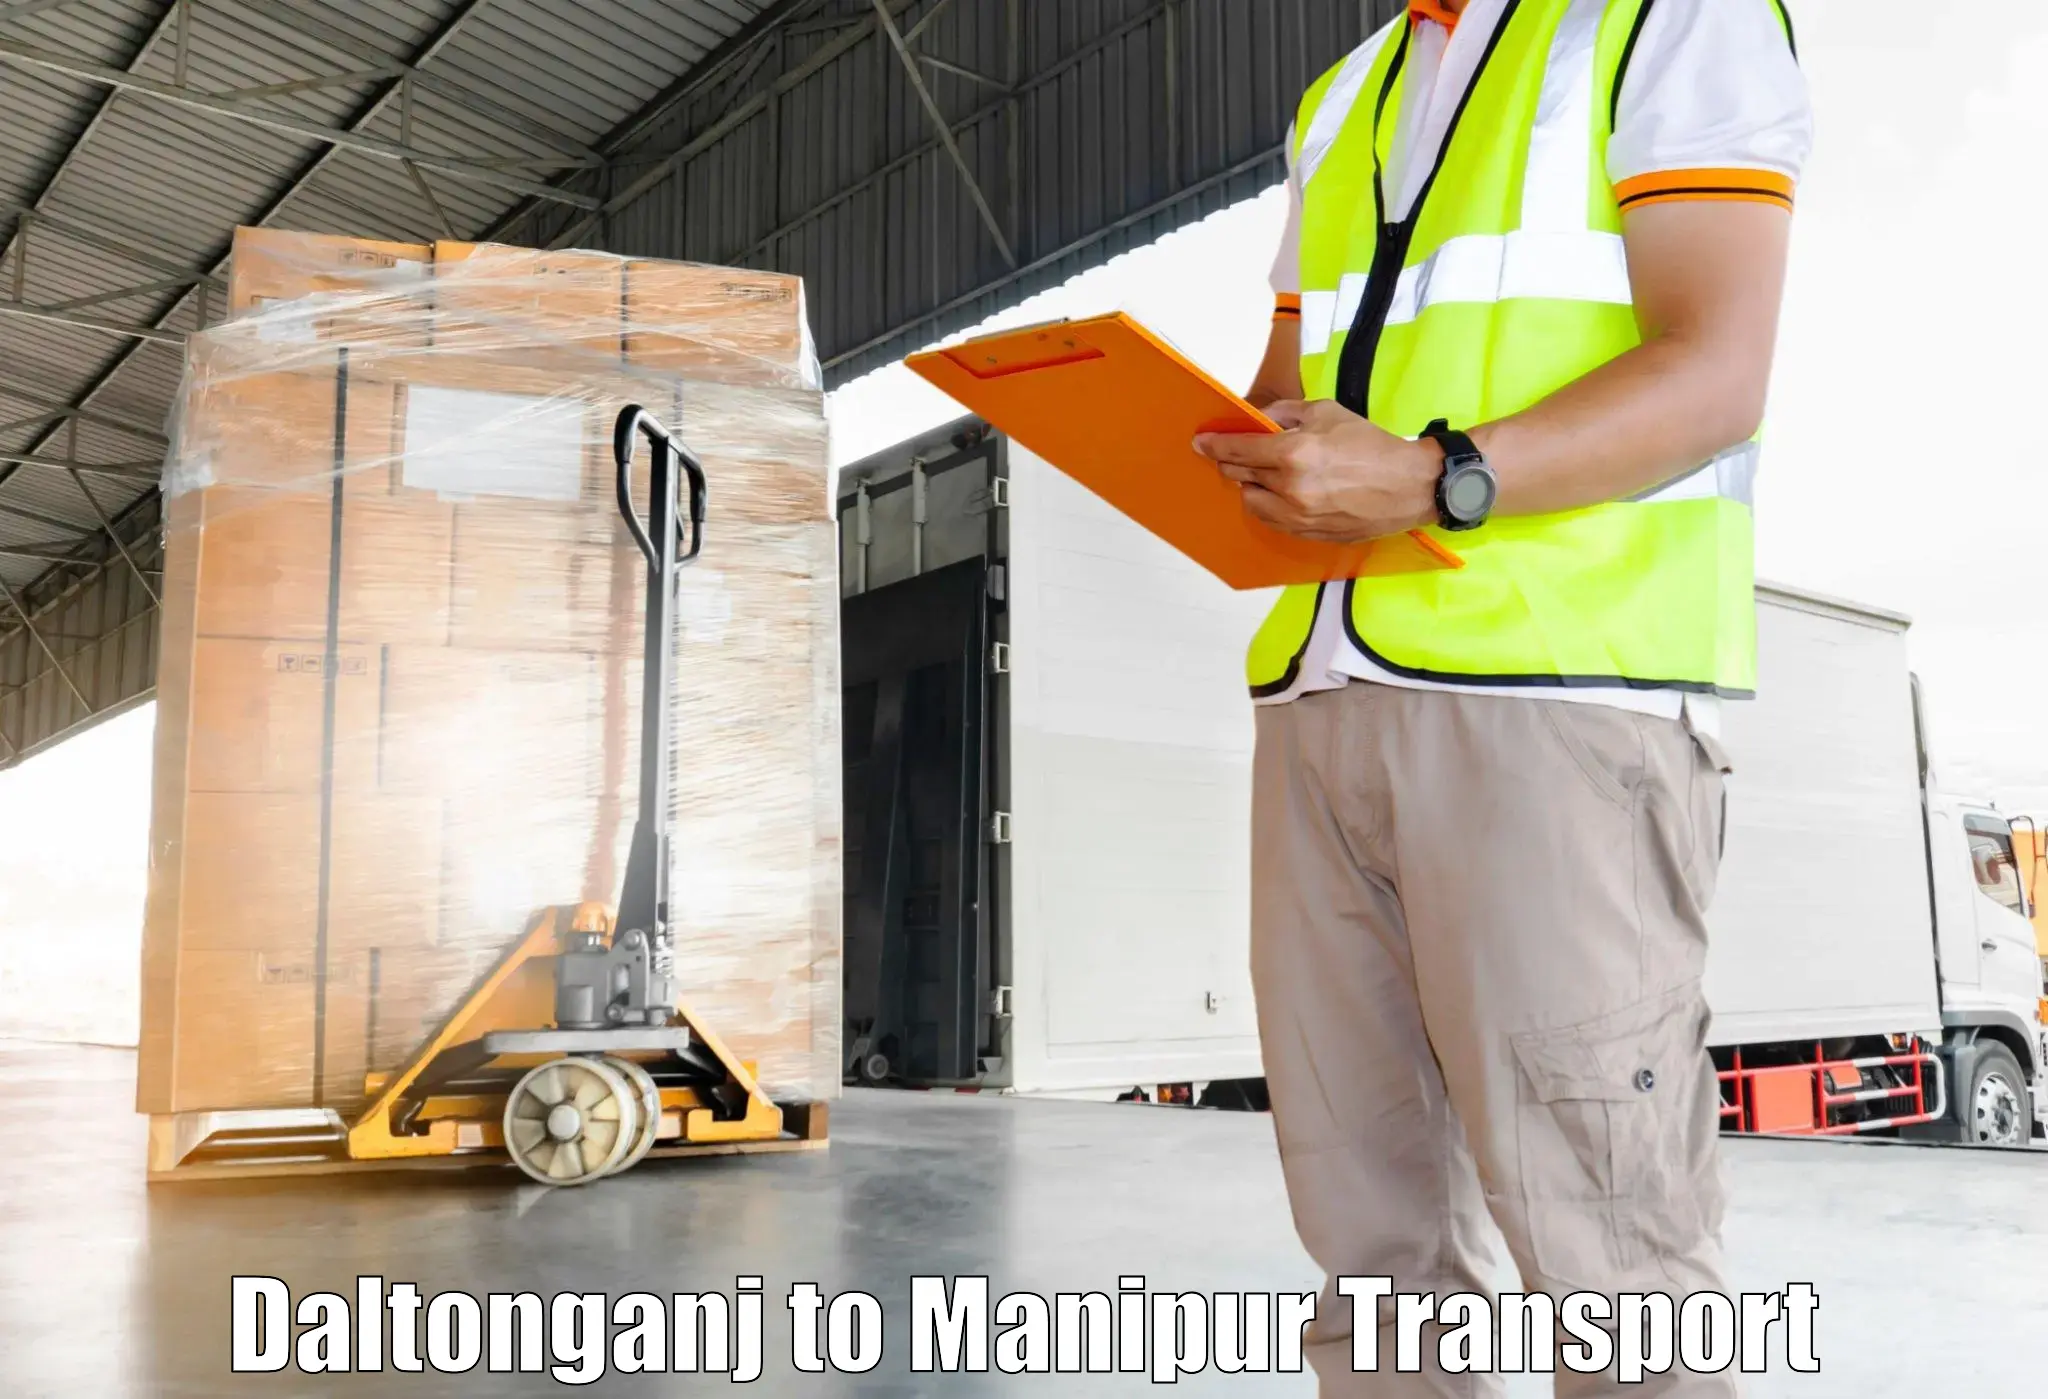 Lorry transport service Daltonganj to Manipur